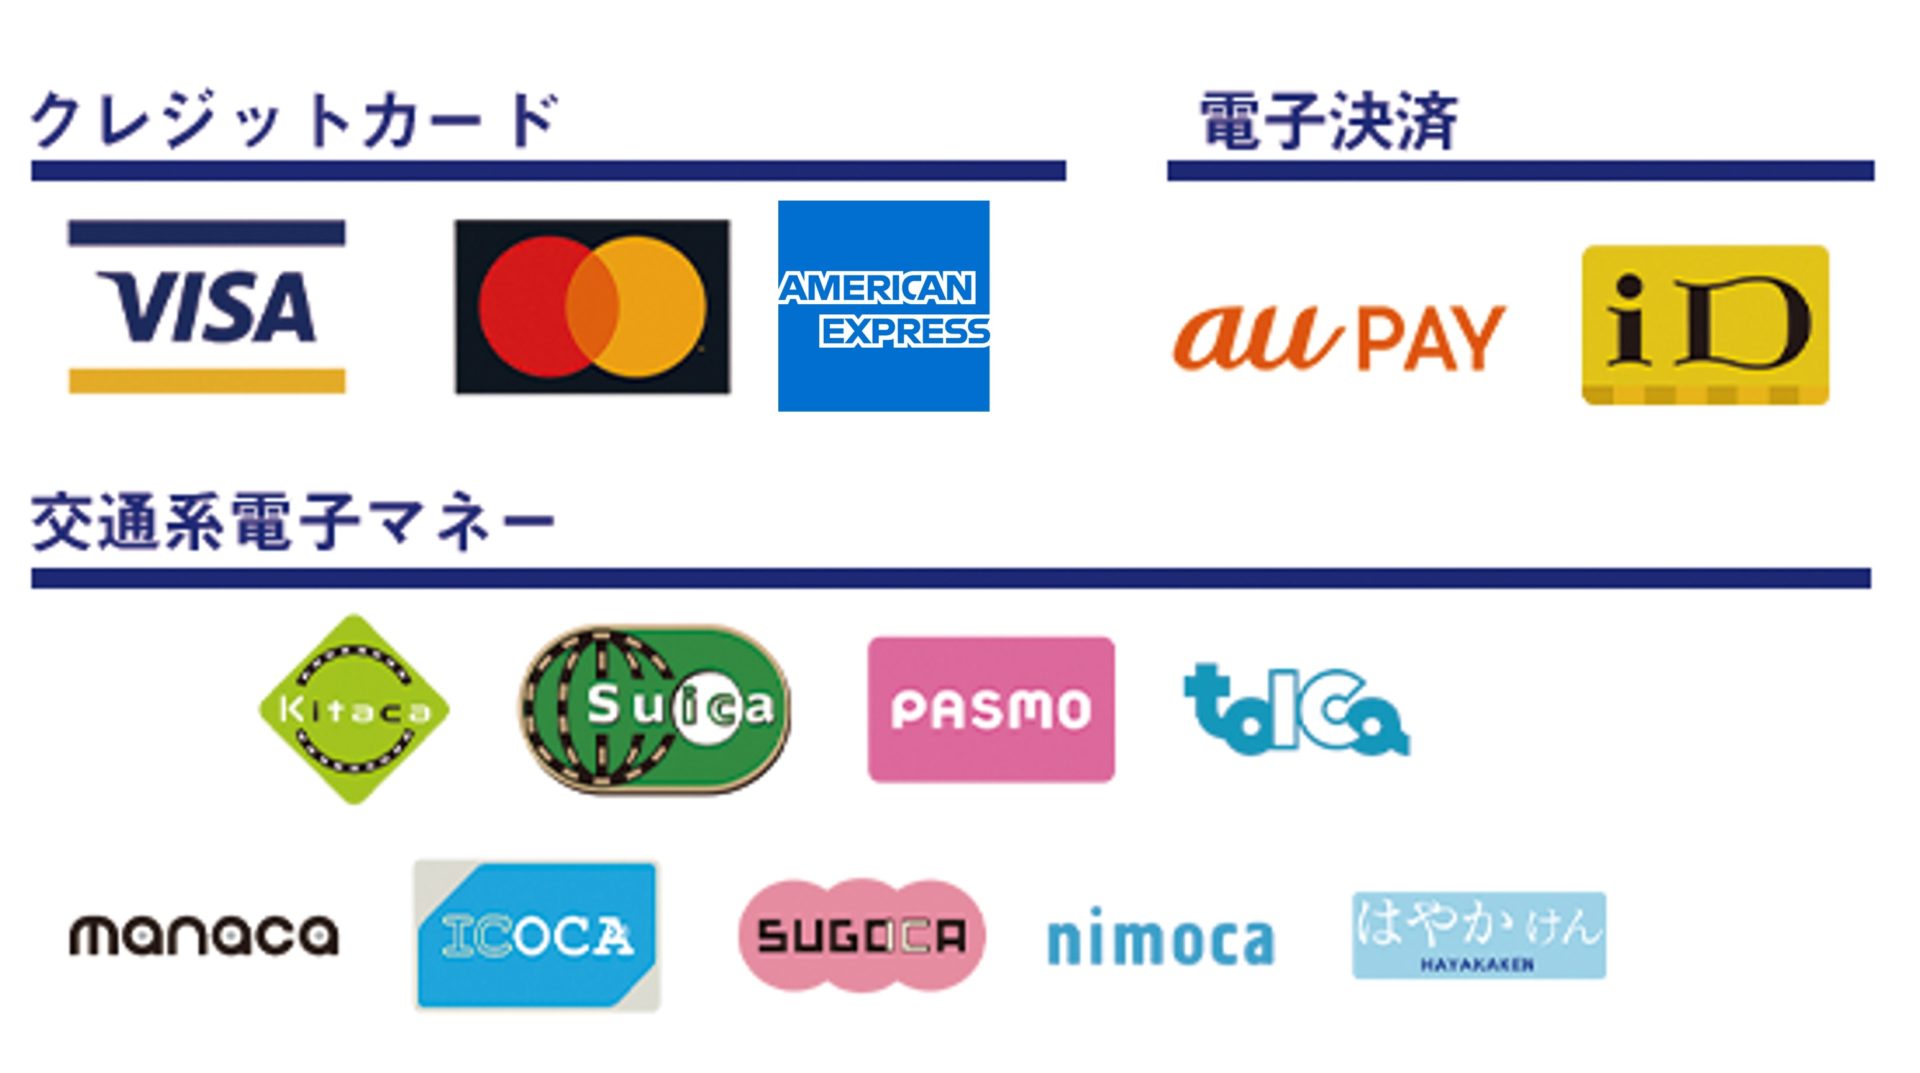 対応クレジットカード等支払い方法